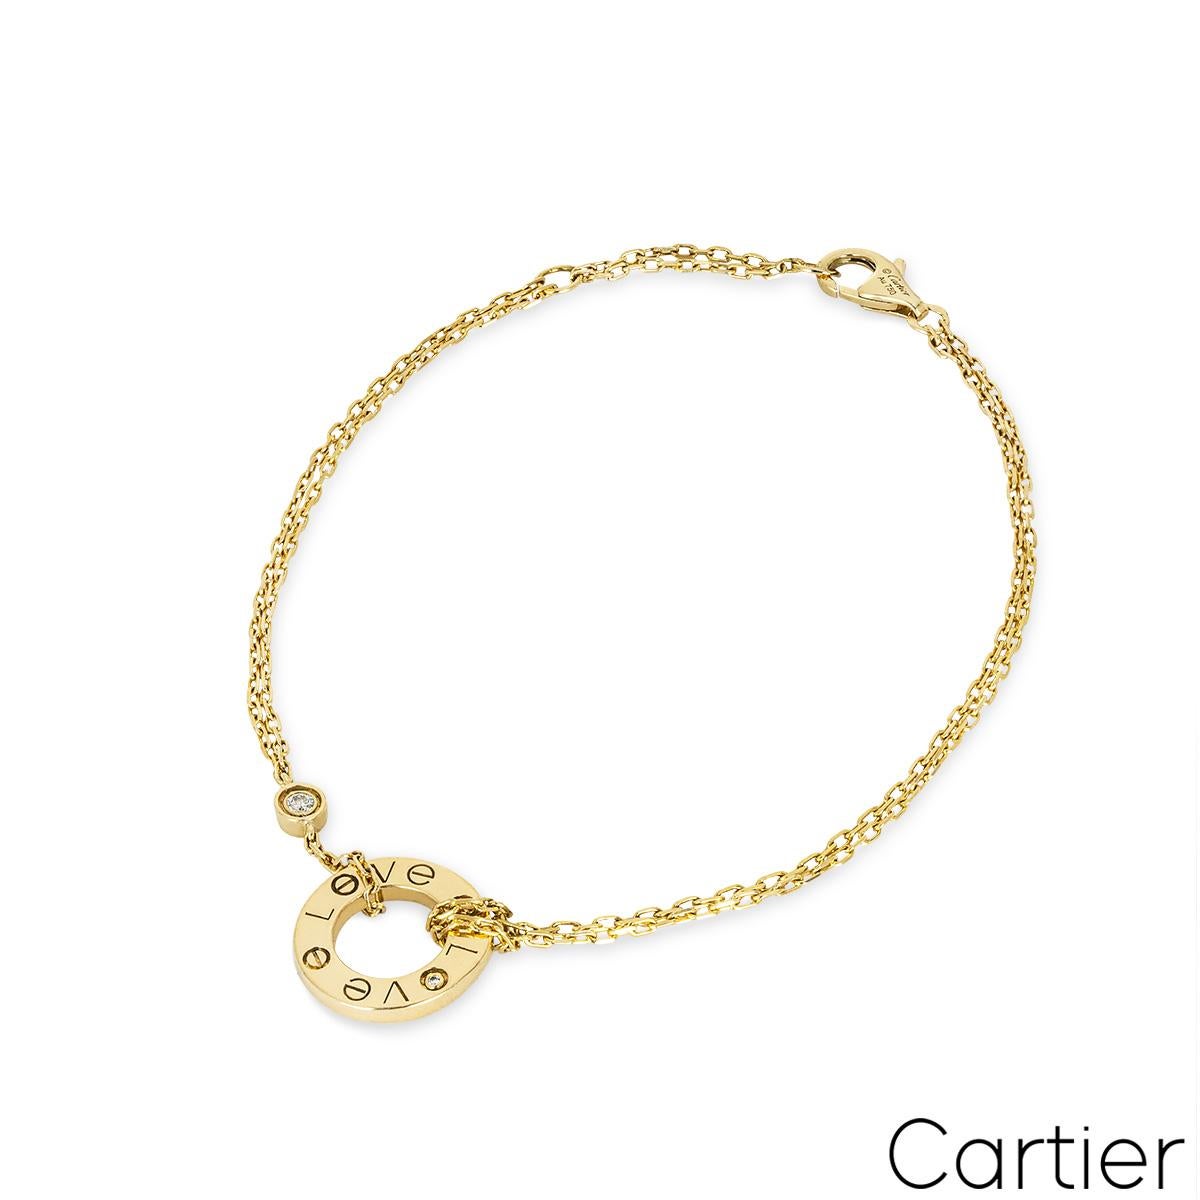 Ein Armband aus 18 Karat Gelbgold von Cartier aus der Collection'S Love. Das Armband besteht aus einem doppelten Gelbgoldarmband, das zu einem offenen, kreisförmigen Motiv mit der Gravur LOVE